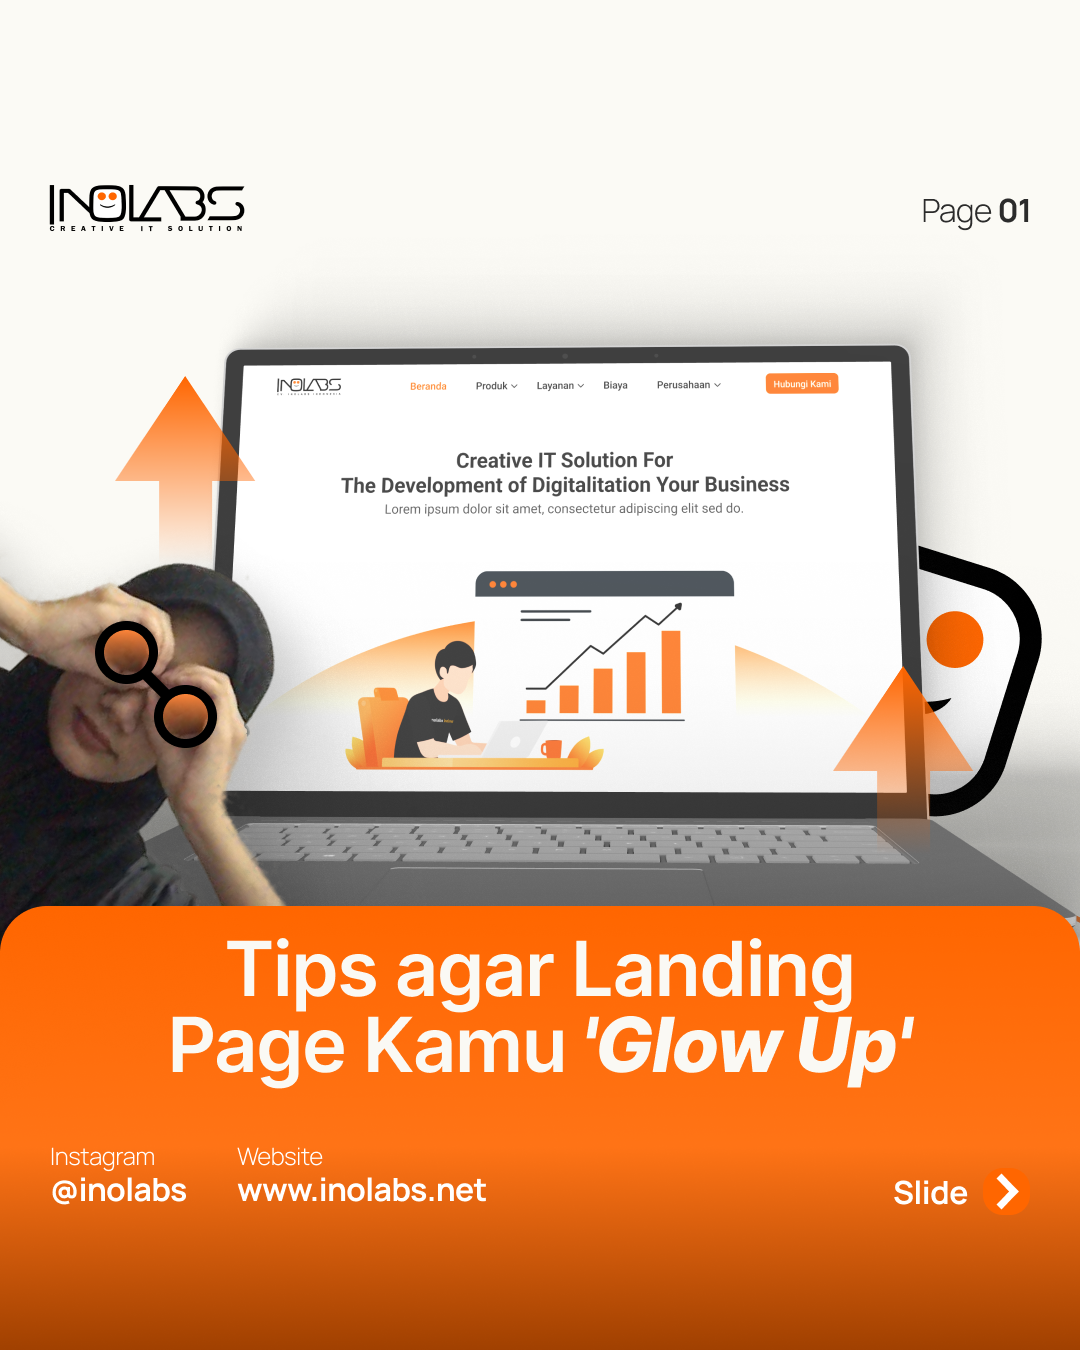 Tips agar Landing Page Kamu 'Glow Up'